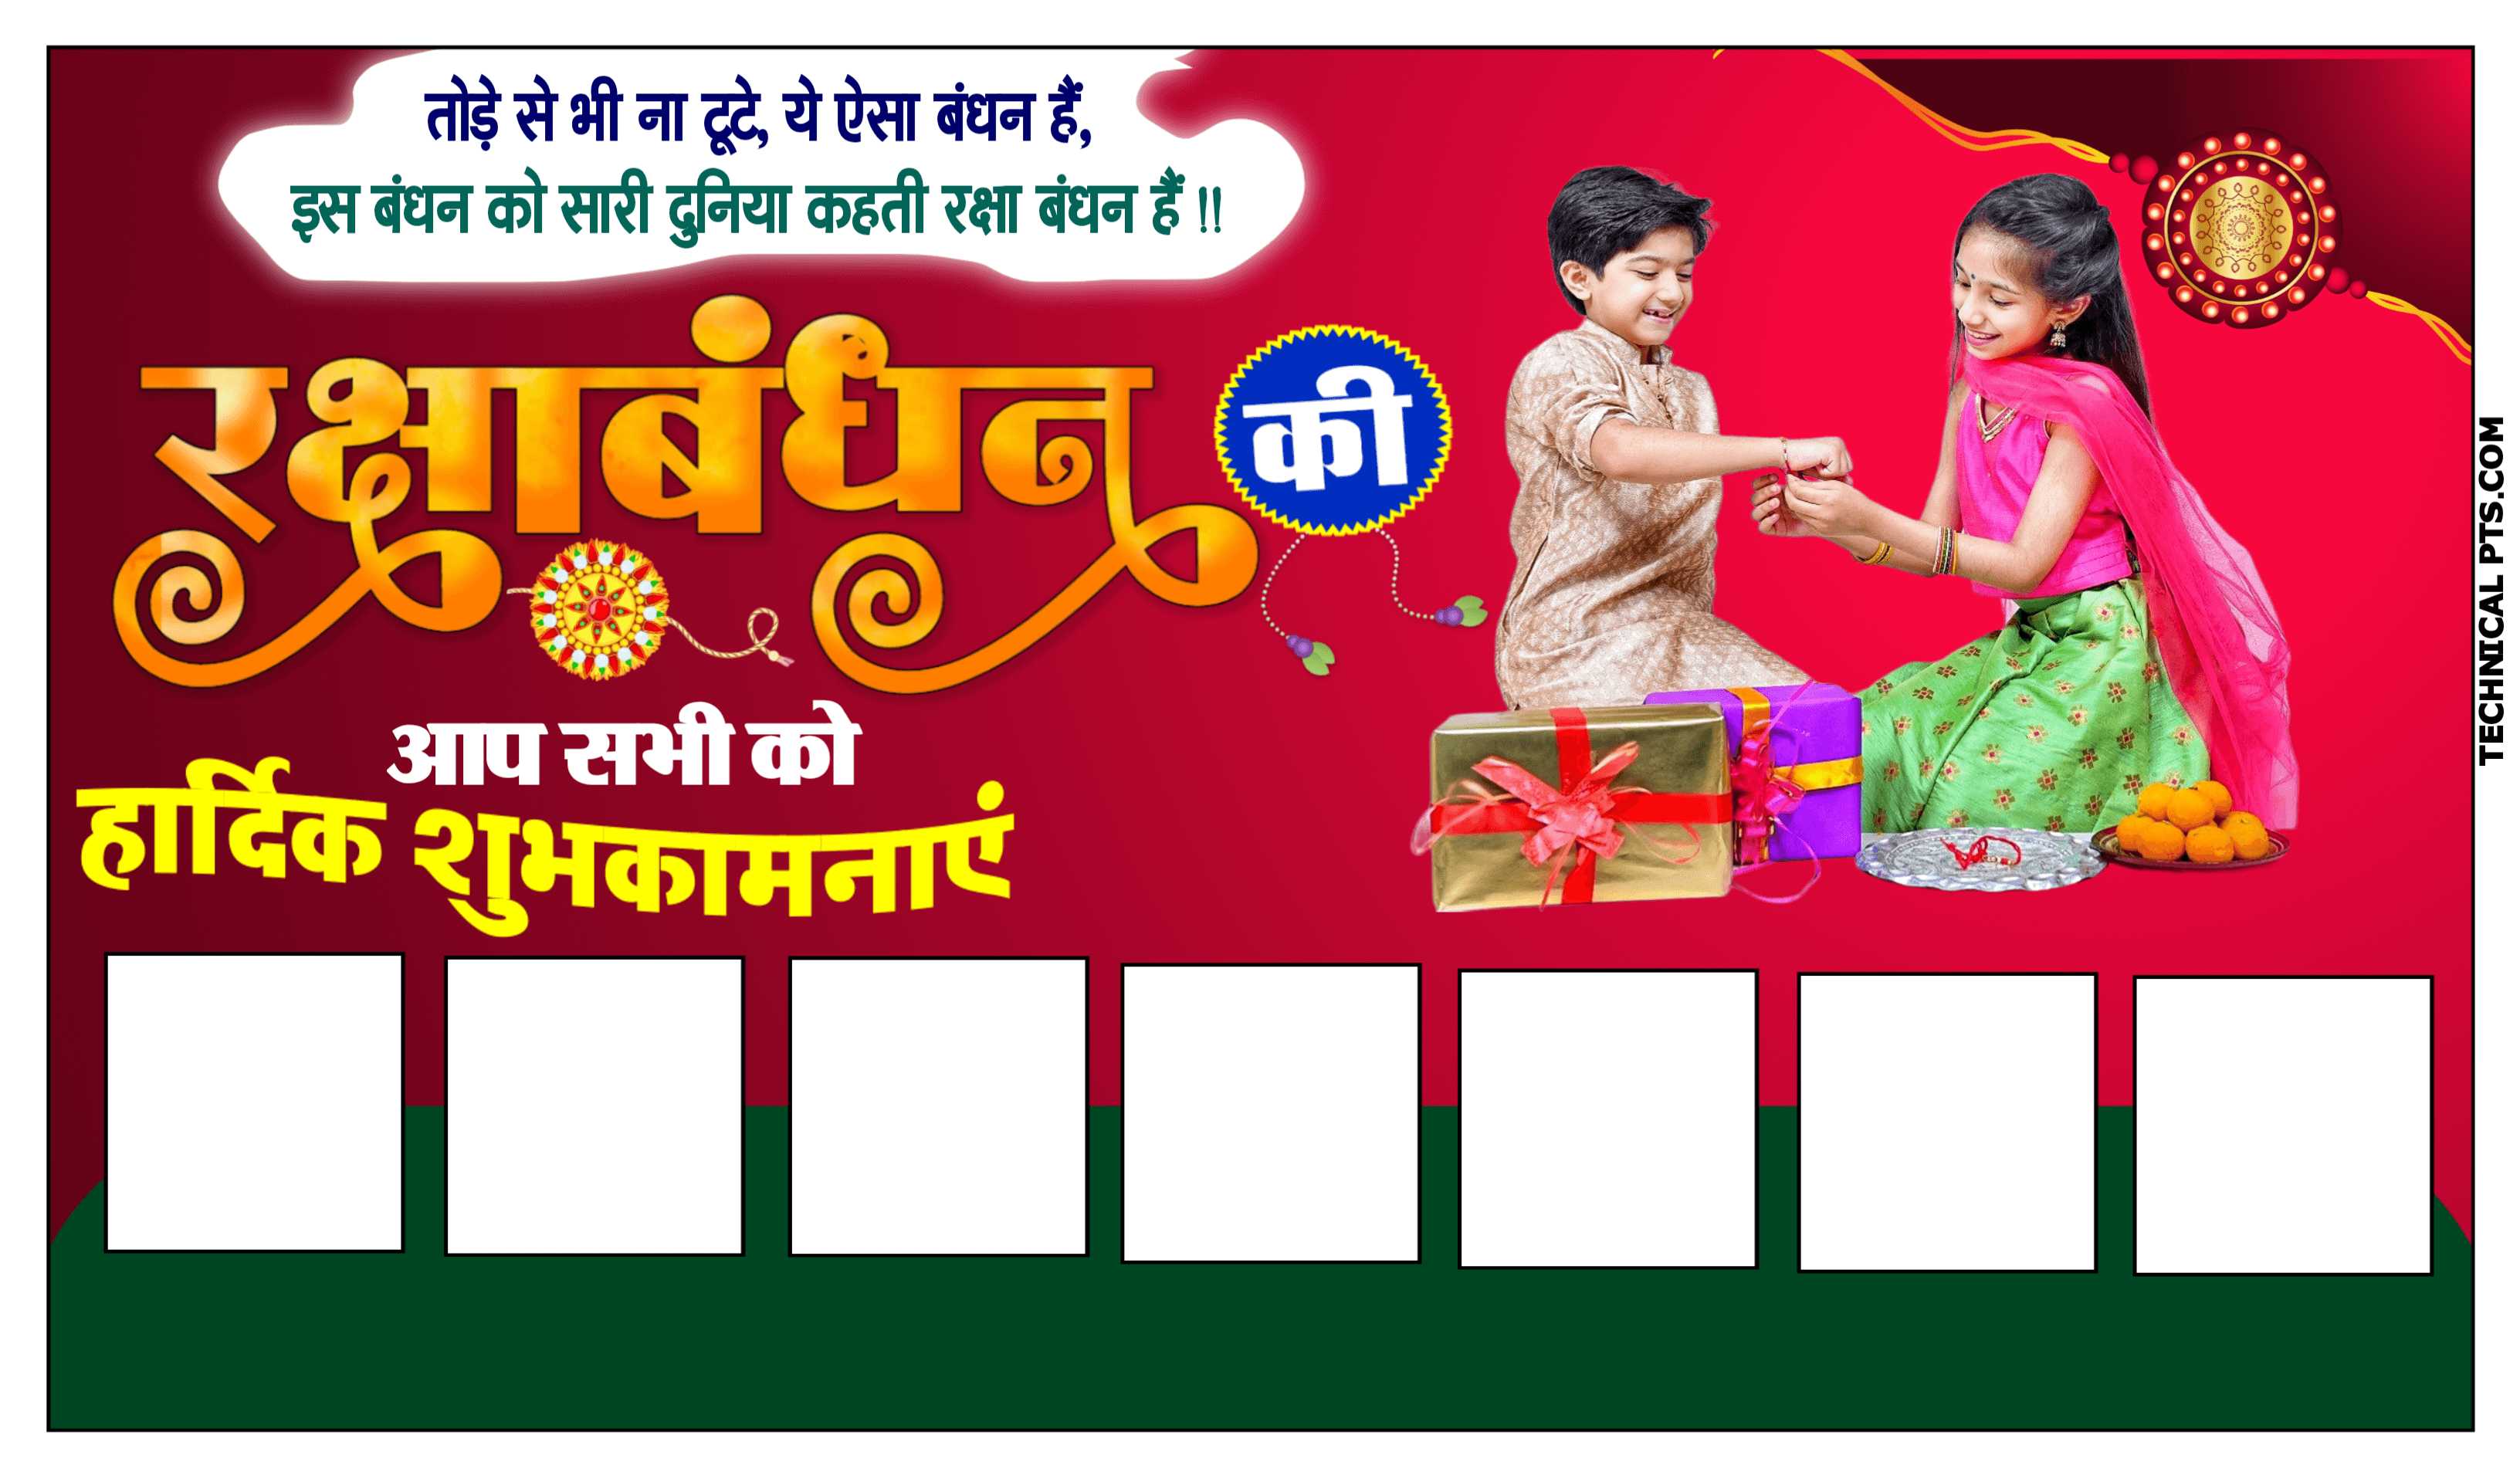 Raksha Bandhan group poster Plp file download| Happy Raksha Bandhan plp file| Raksha Bandhan poster Kaise banaen